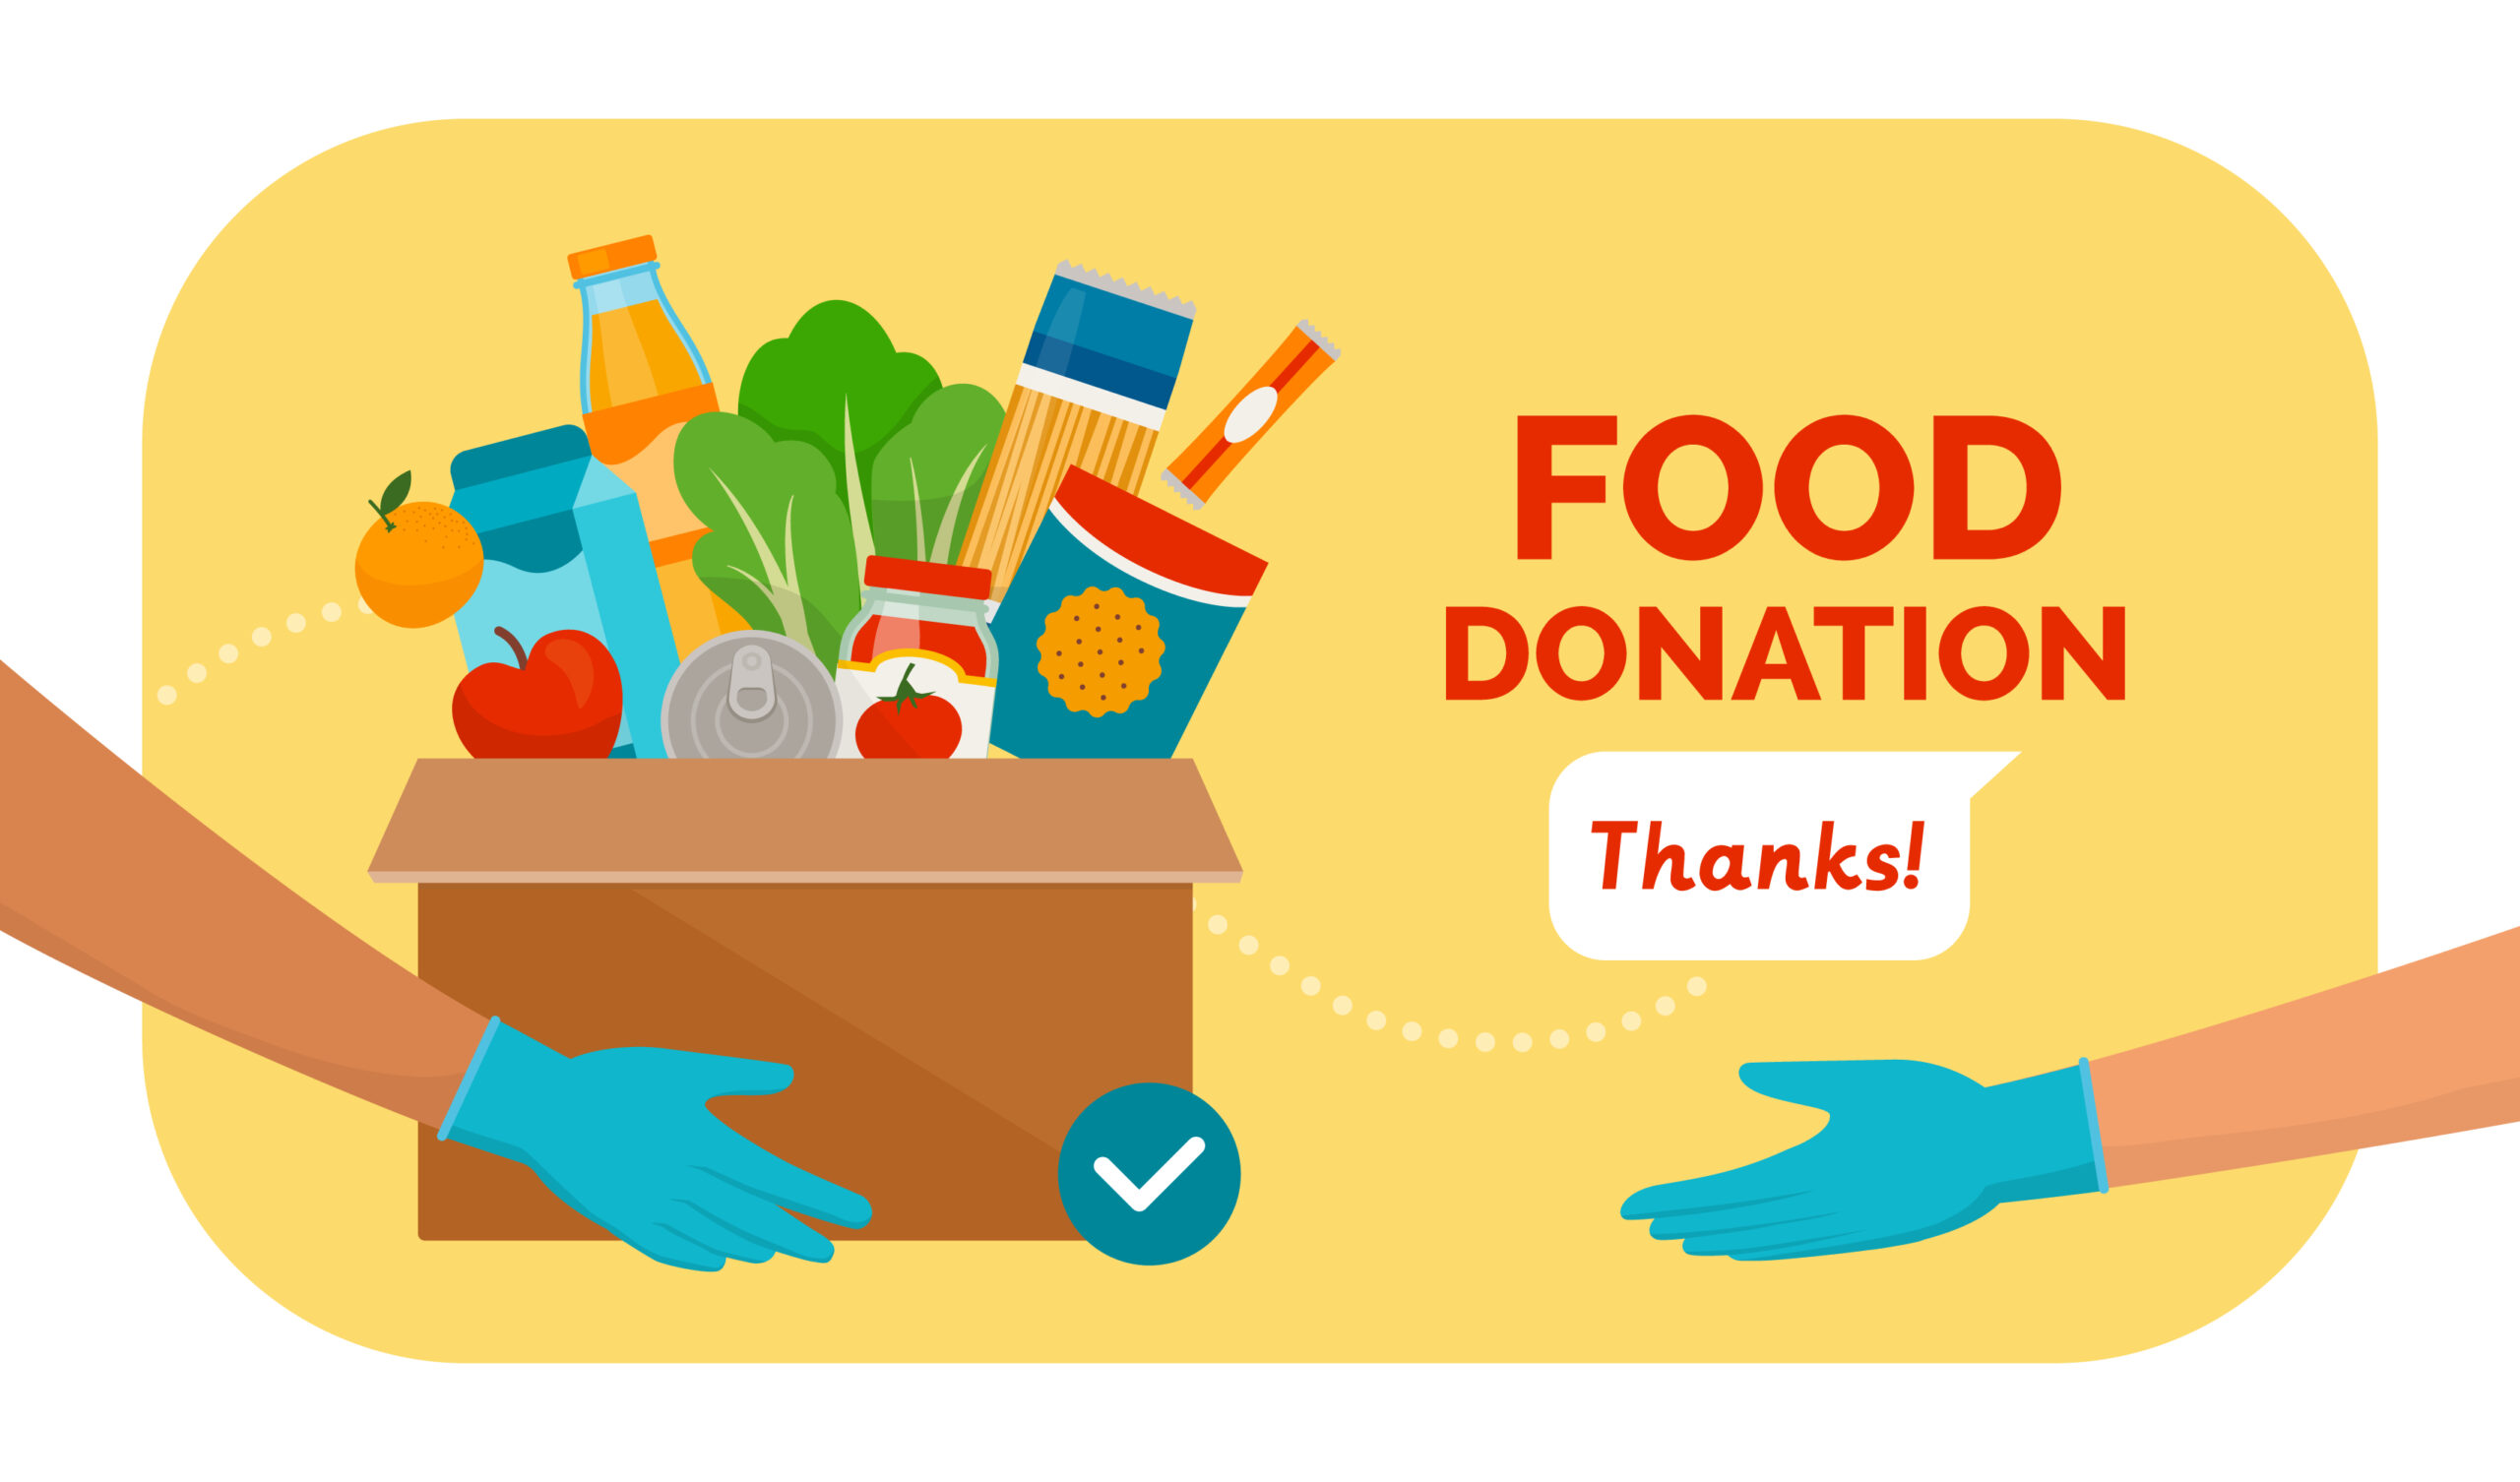 食品の寄付をしたい。知っておくべきことや方法、寄付できる食品をご紹介します